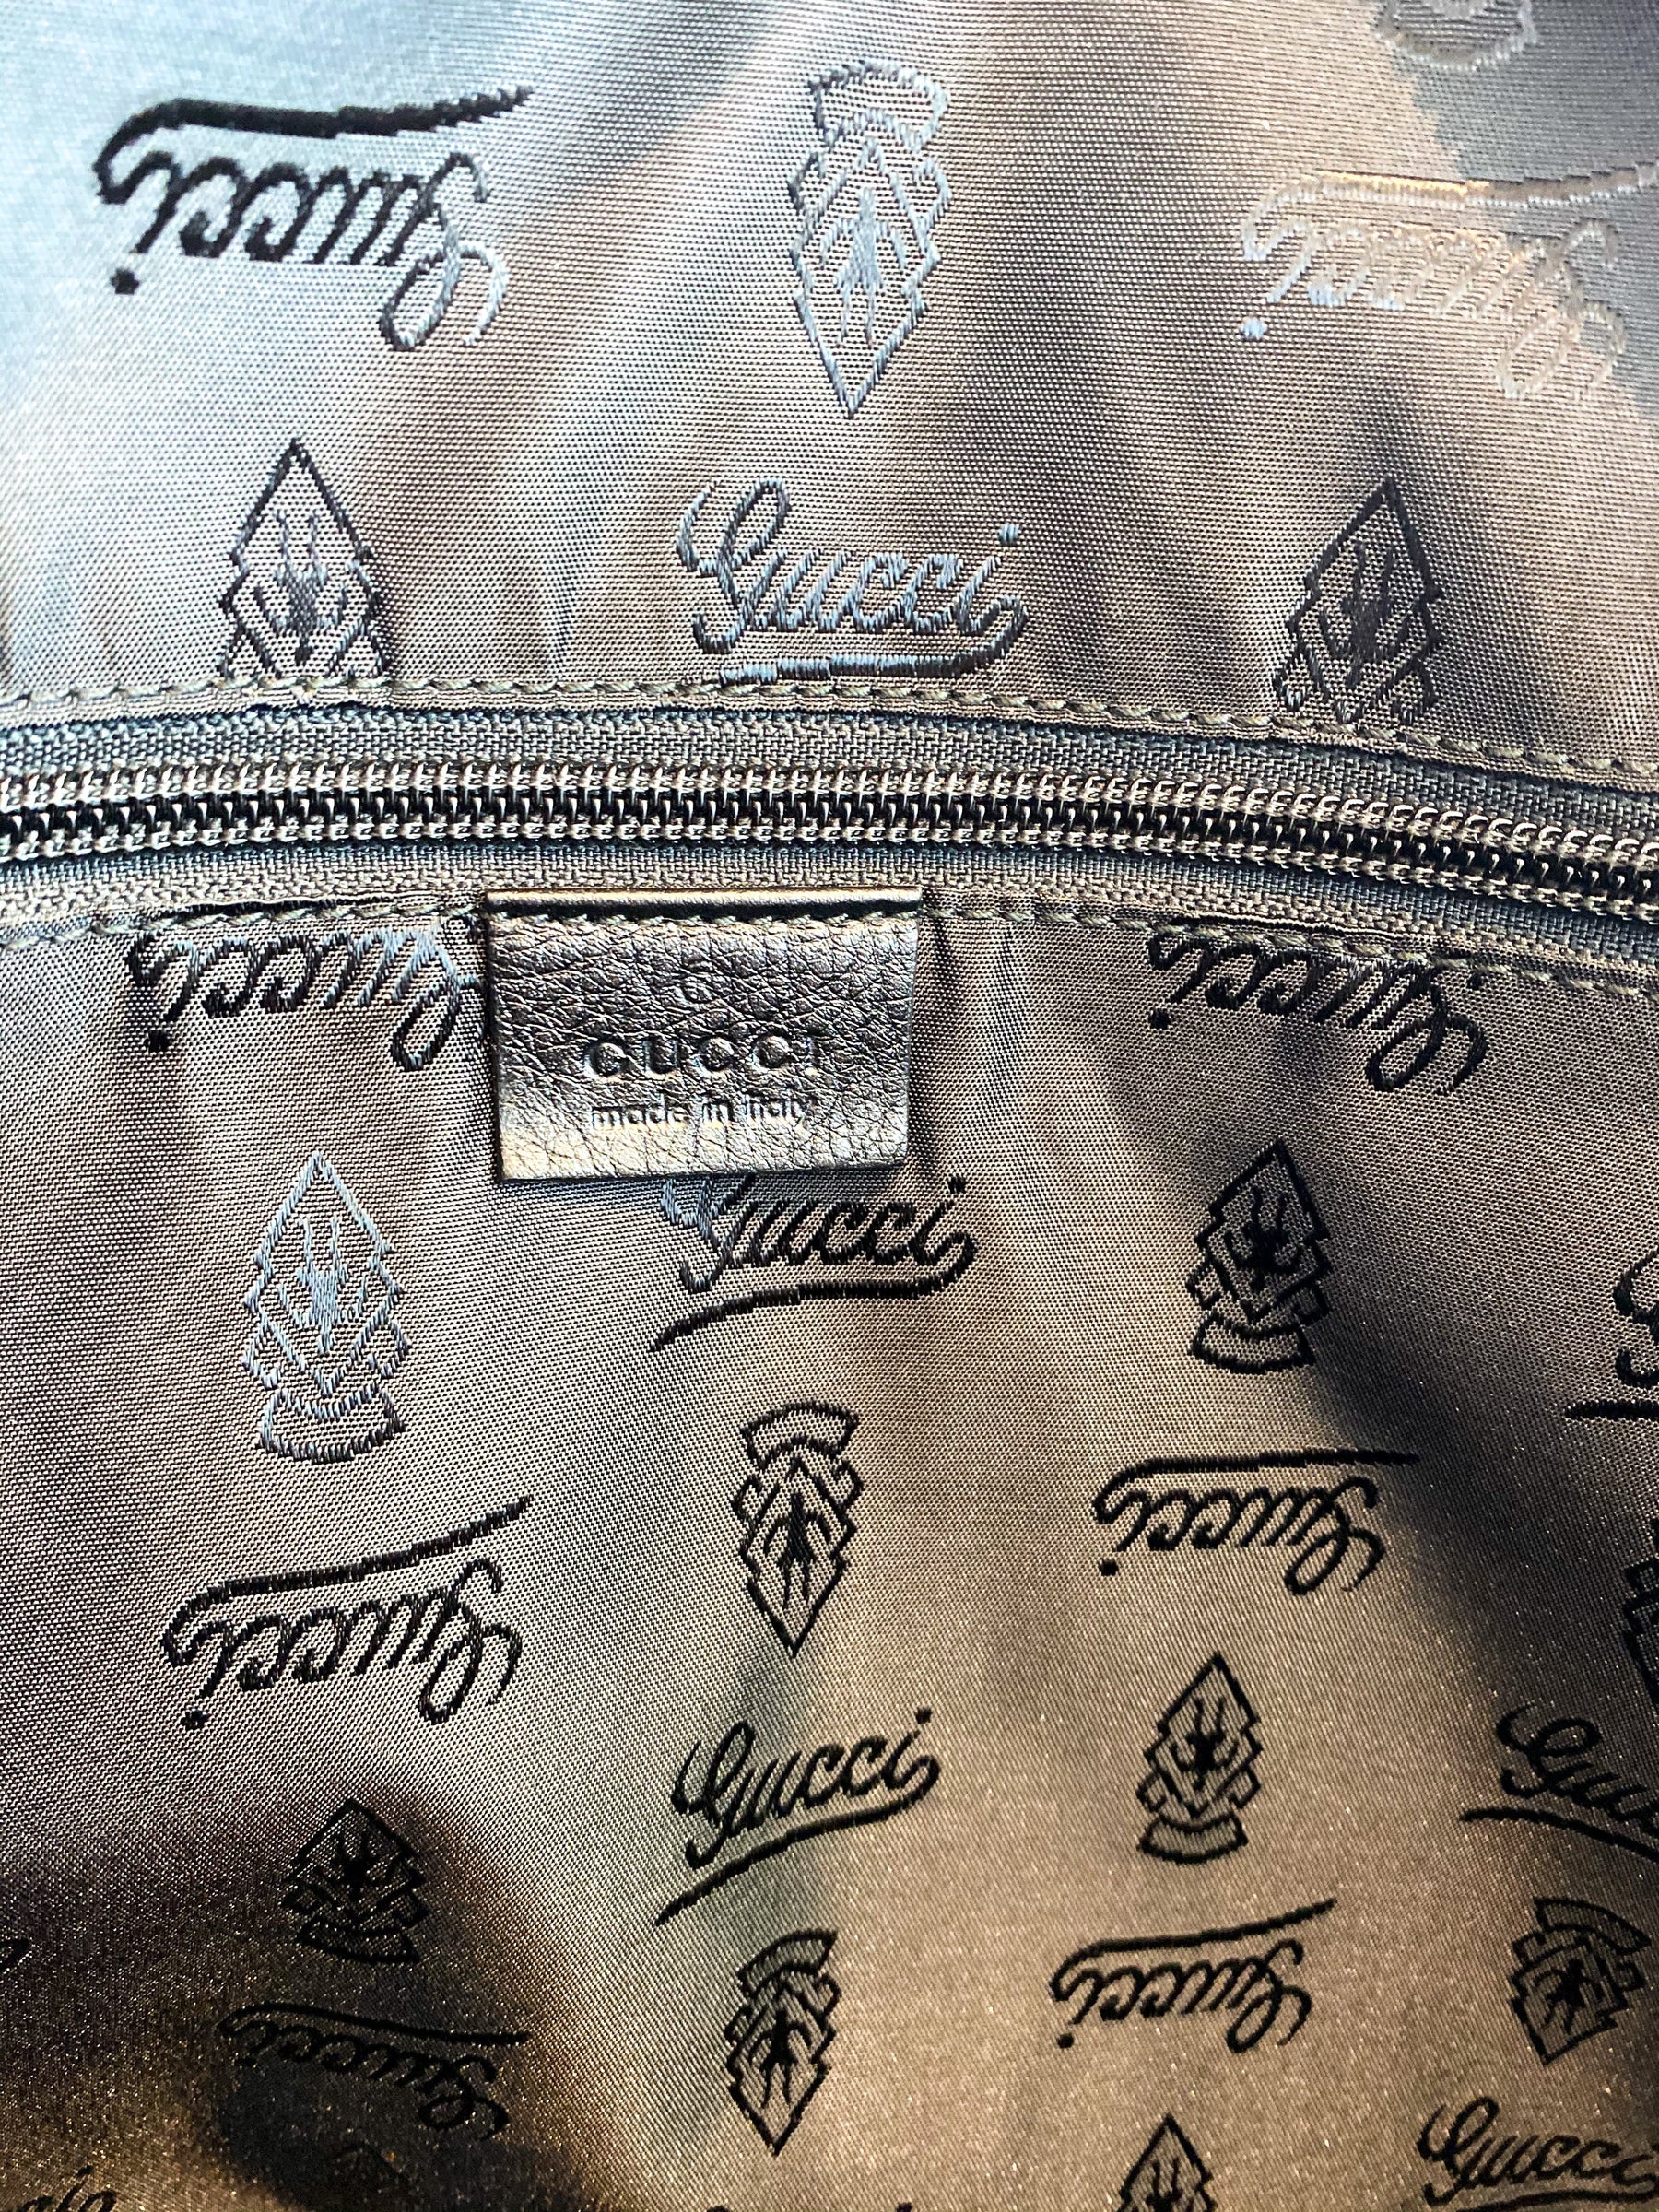 Gucci Black Leather Weekender Bag Inside of Bag Zipper Pocket